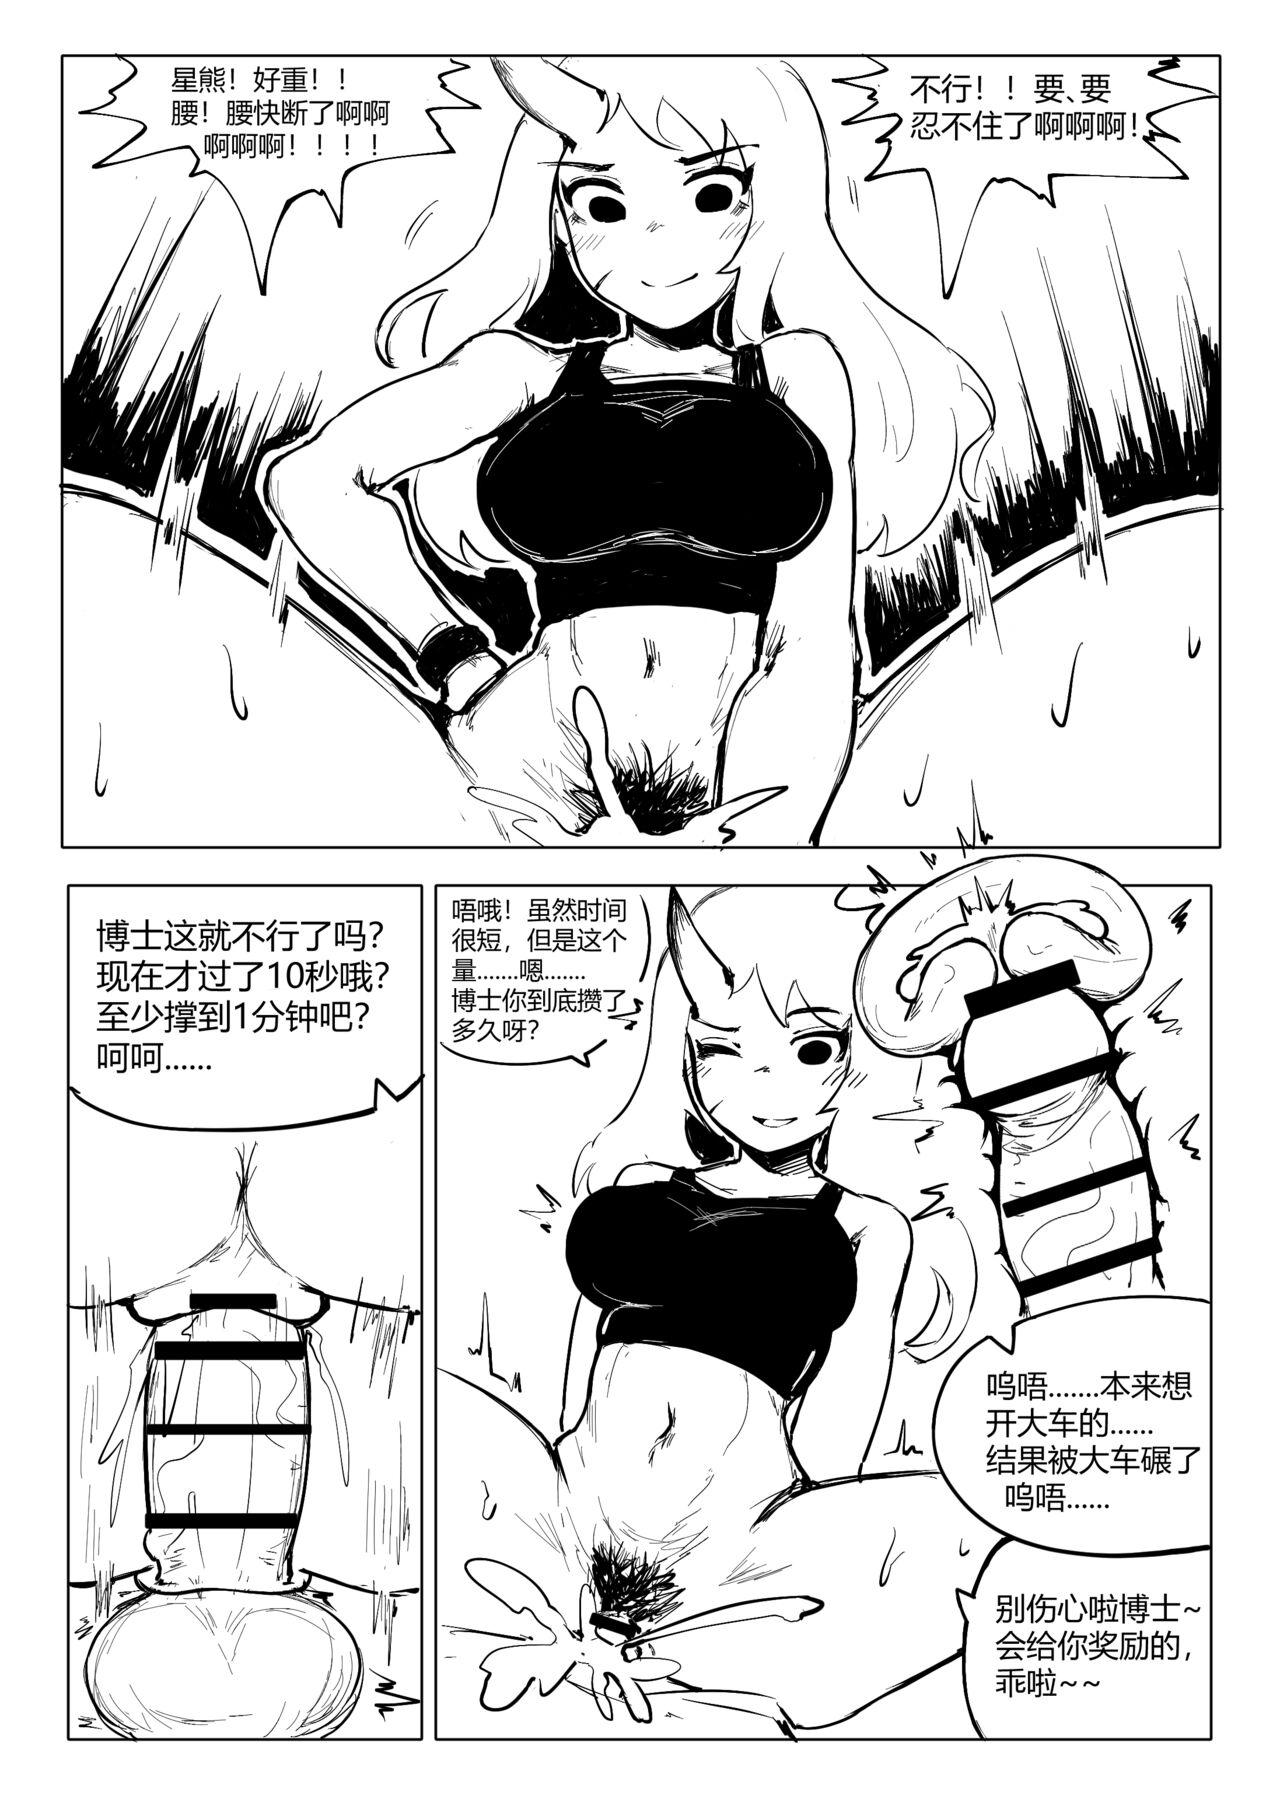 澄澈之冰 明日方舟漫画 星熊 4